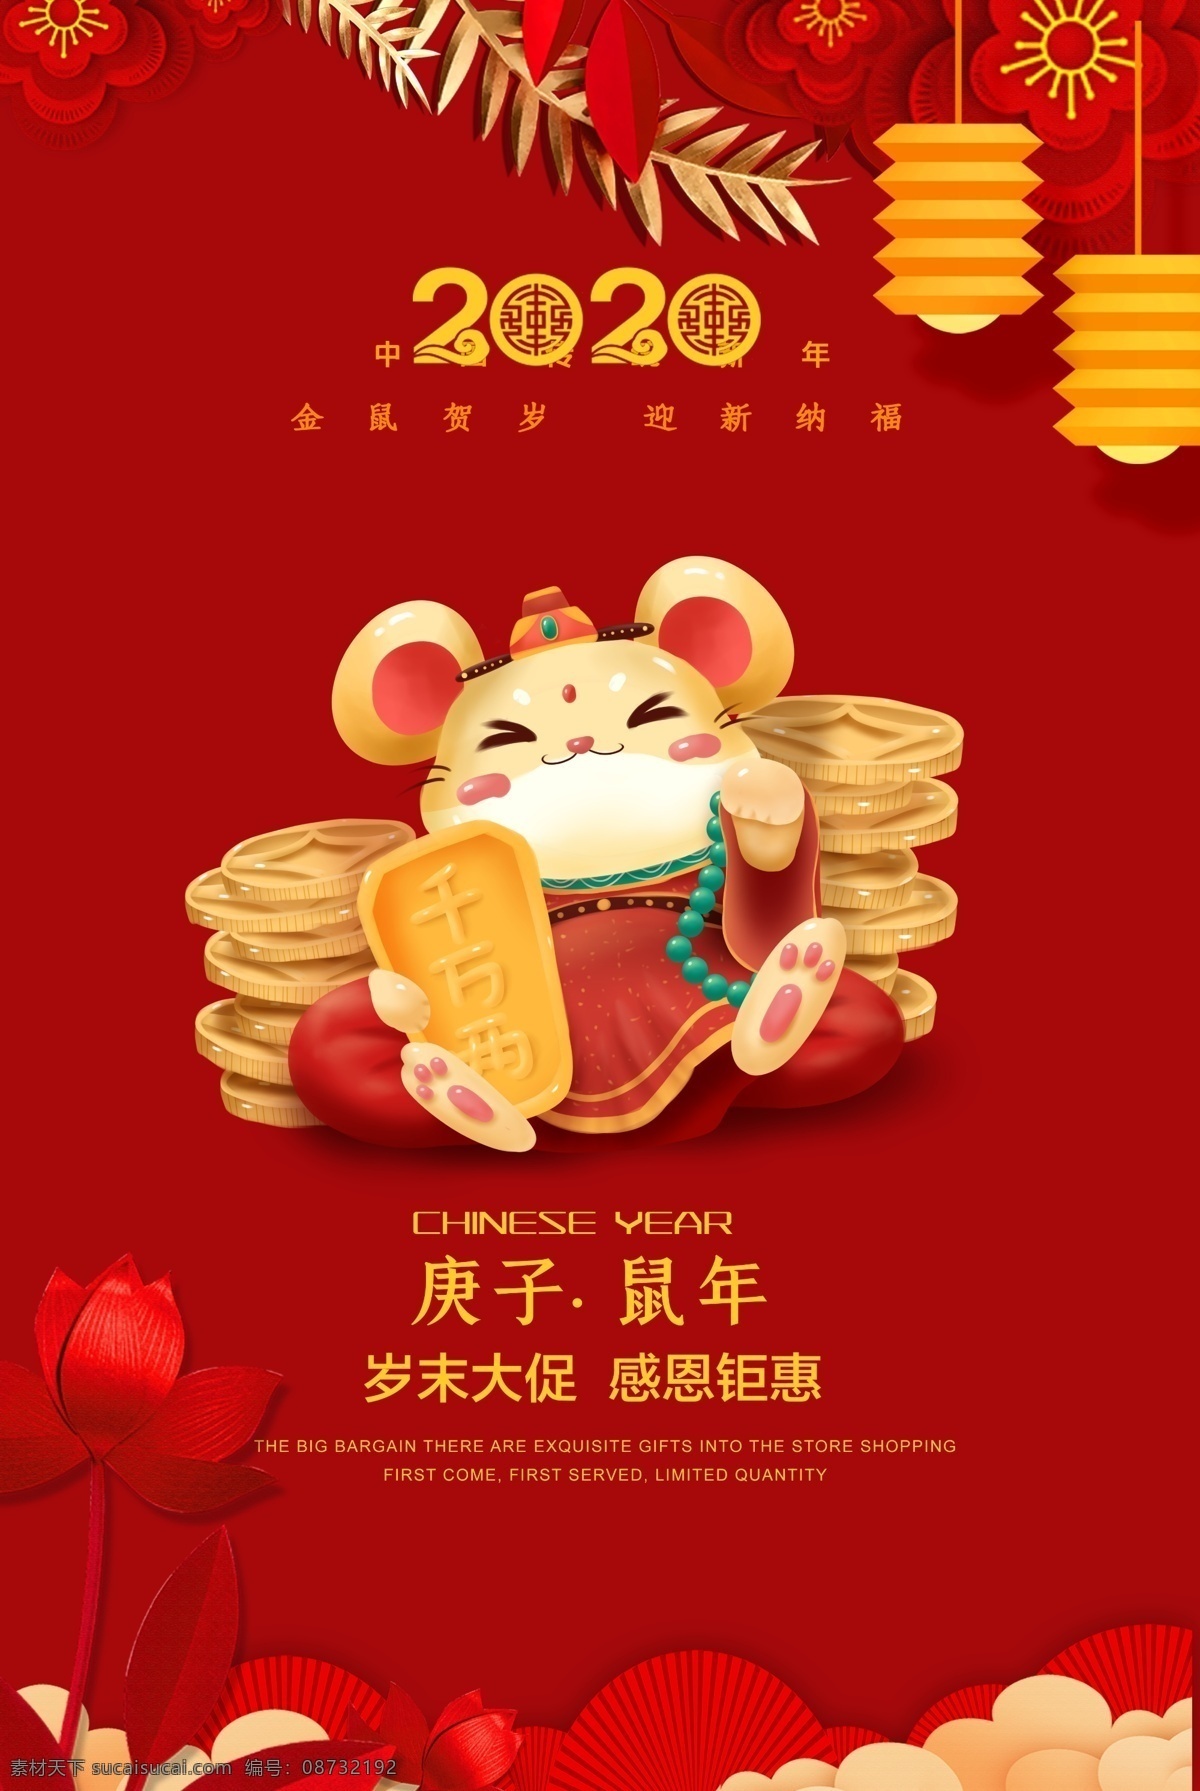 年末 大 促销 海报 鼠年大吉 红色 鼠 2020 新春 过年 宣传单